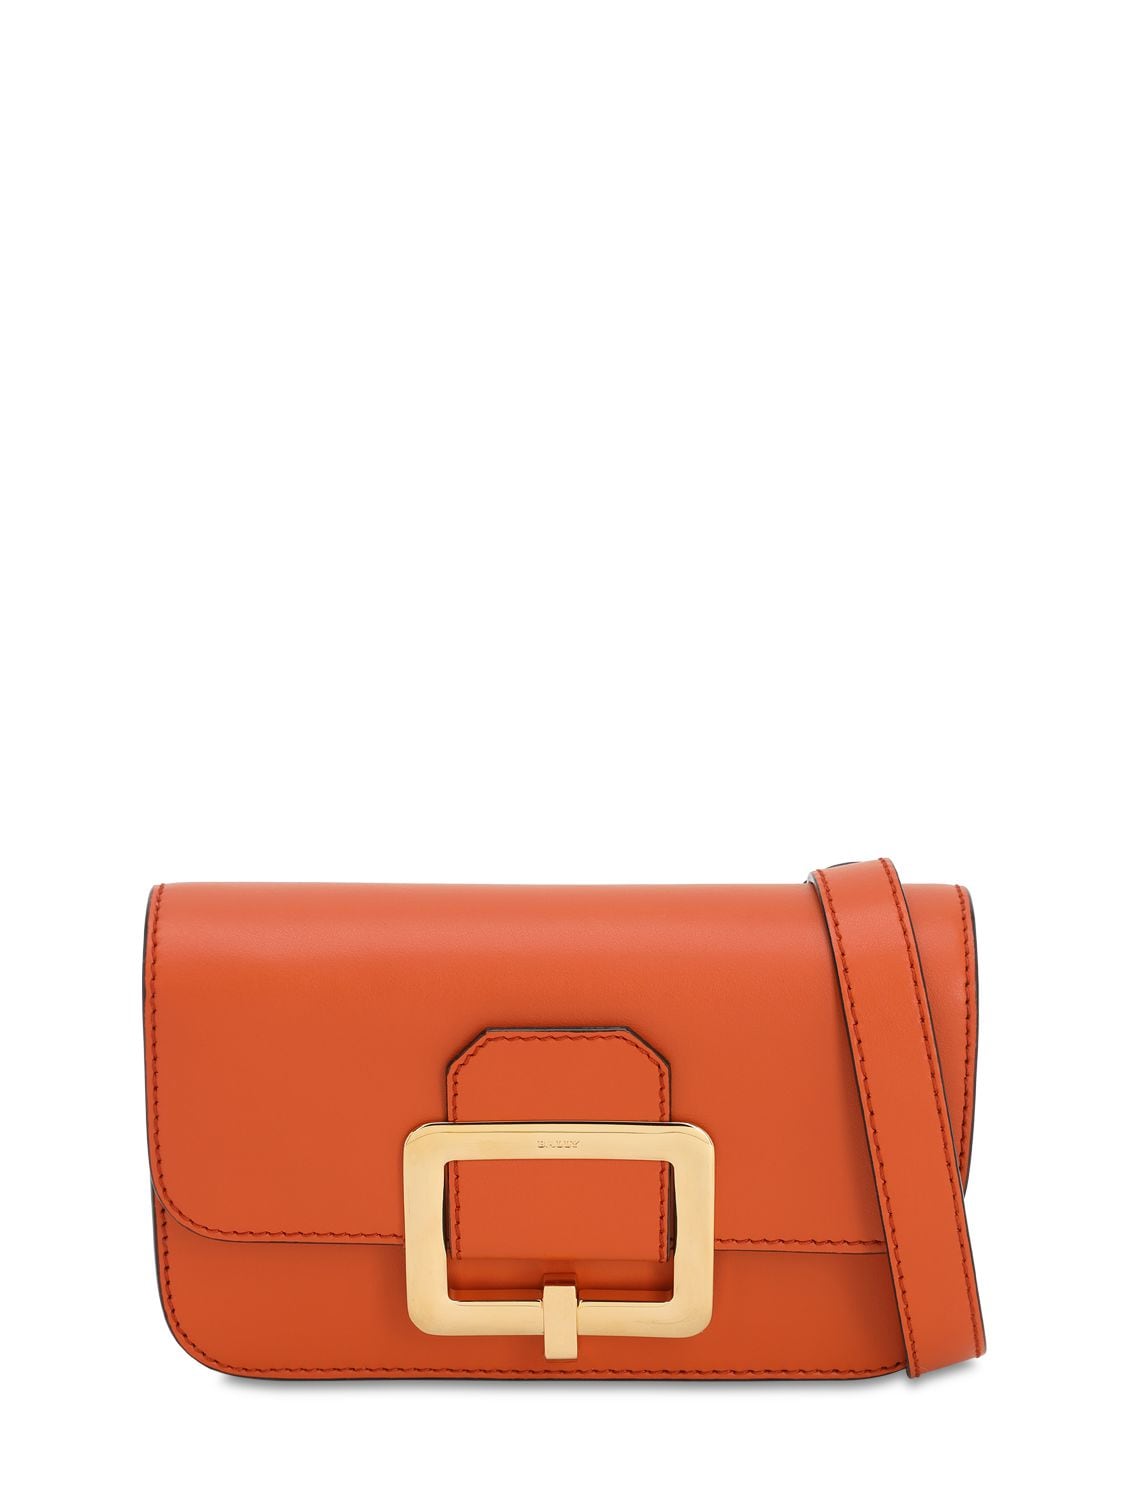 Bally Janelle Leather Belt Bag In Mandarino